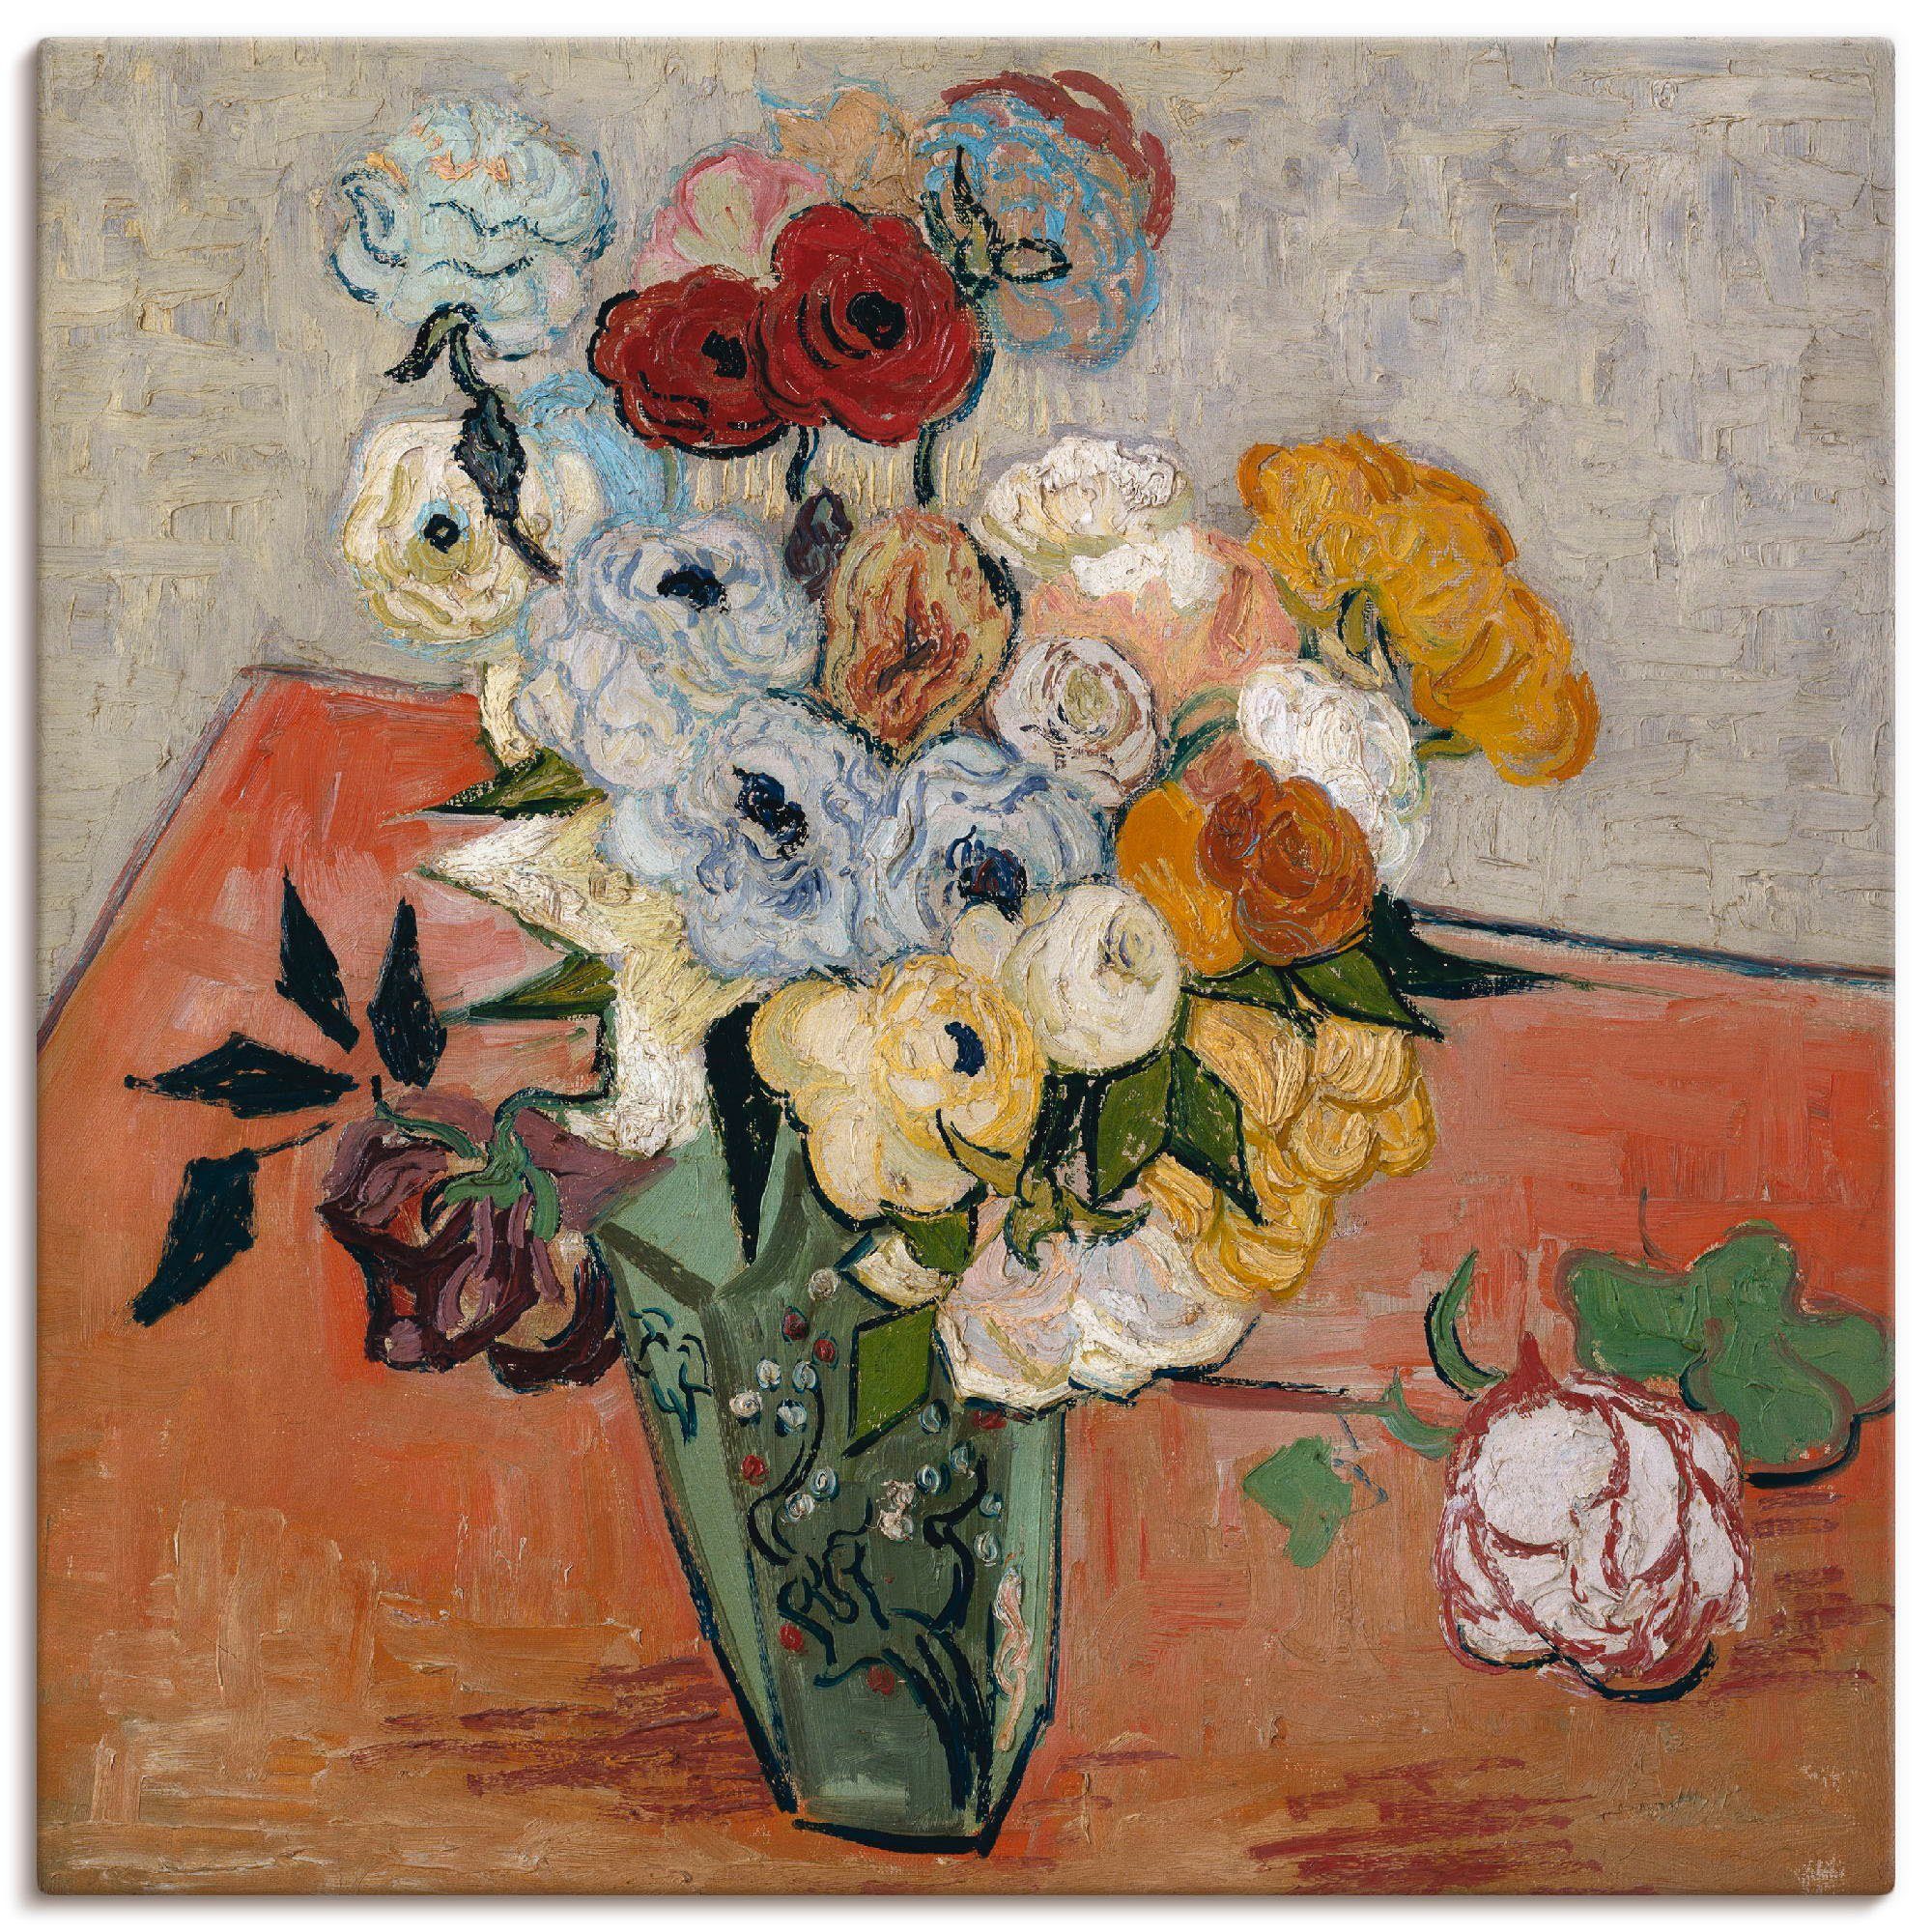 Wandbild oder versch. und mit Blumen als Poster Wandaufkleber Anemonen, Rosen in Artland Vase, St), Stilleben (1 Größen Leinwandbild, japanischer